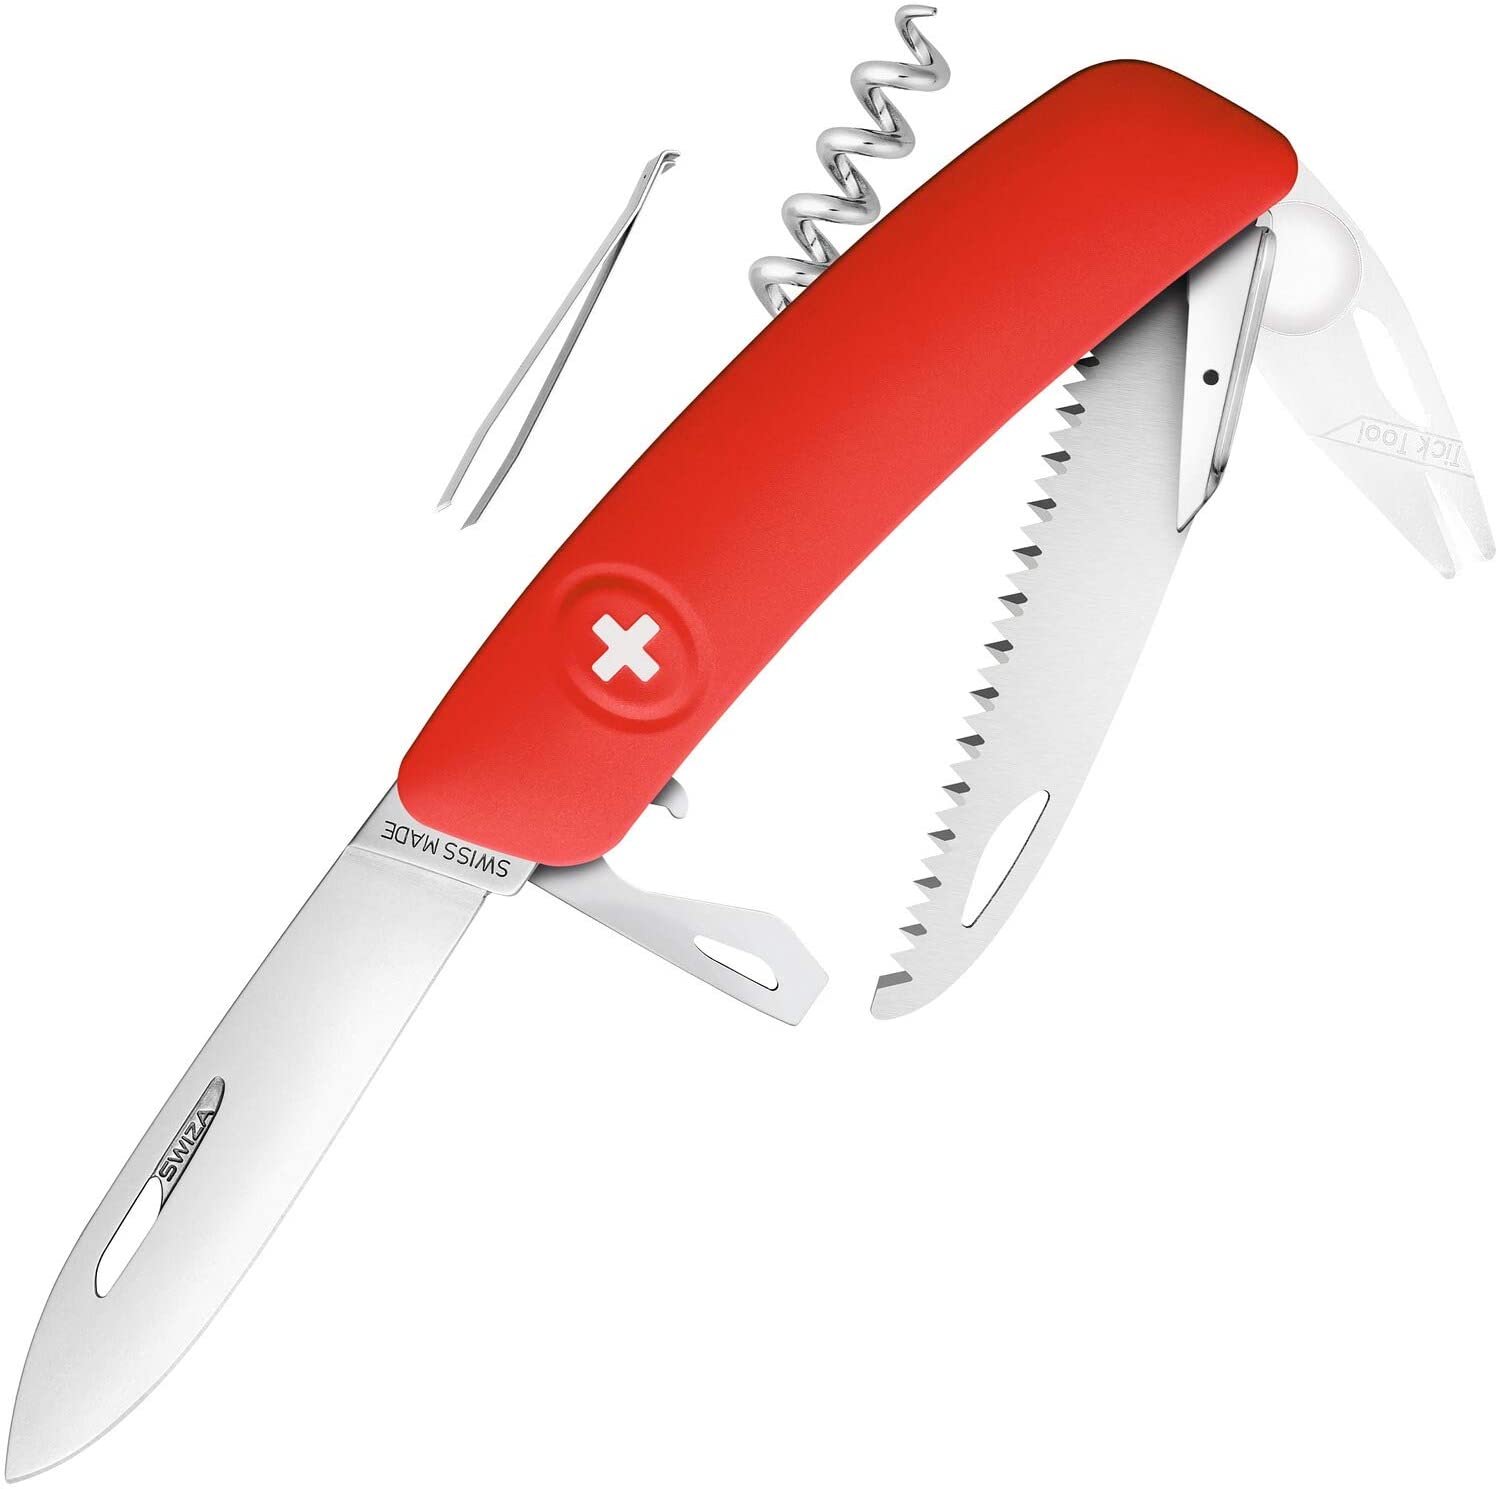 SWIZA 691001 TT05, red knife, silver, 17 cm